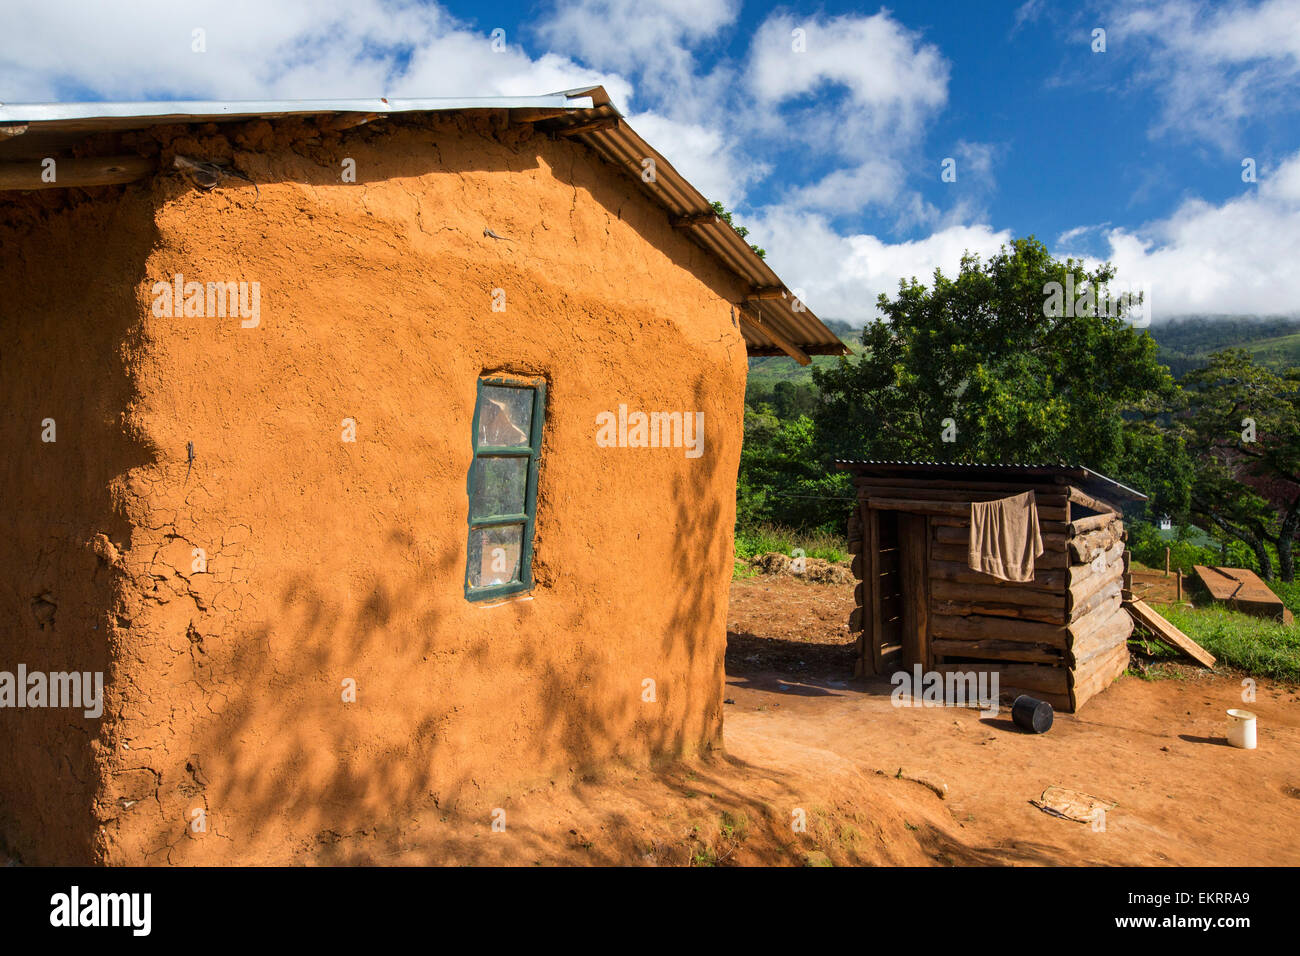 Malawi ist eines der ärmsten Länder der Welt, viele Menschen leben noch in traditionellen Lehmhäuser Hütte, diesein ist auf dem Zomba Plateau. Stockfoto